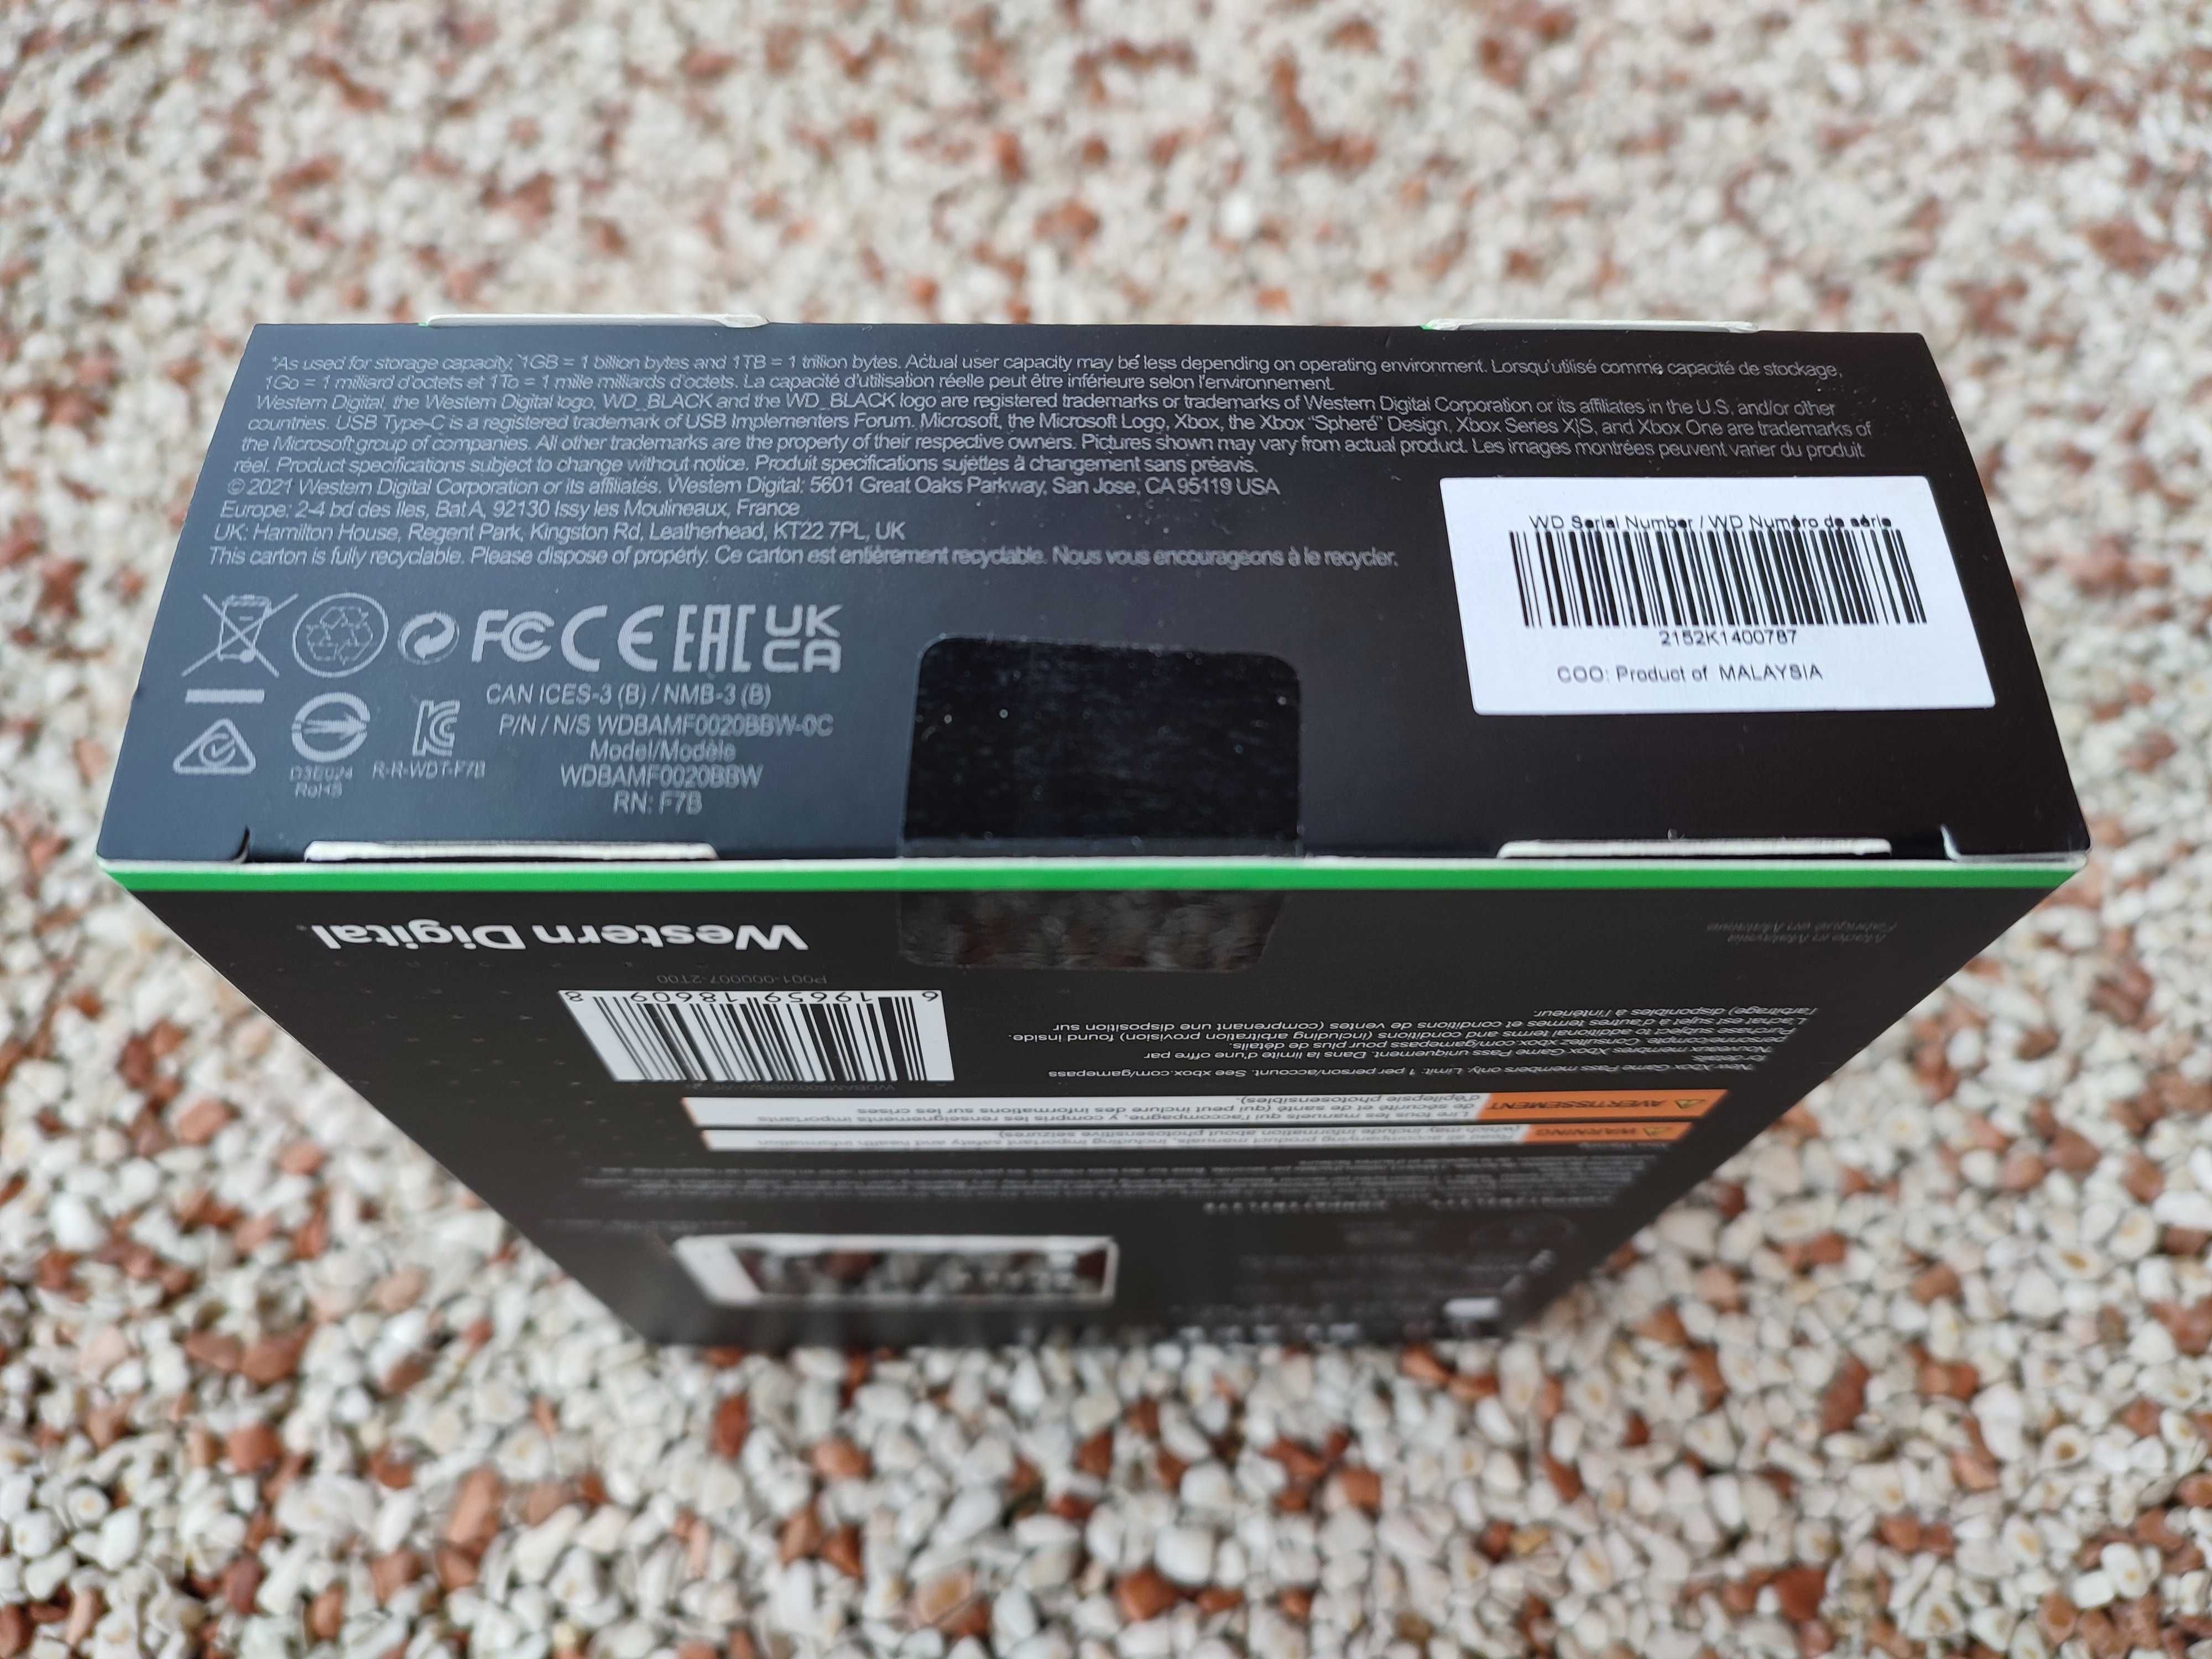 Nowy WD Black D30 2TB. Zewnętrzny dysk SSD. Opakowanie zaplombowane.